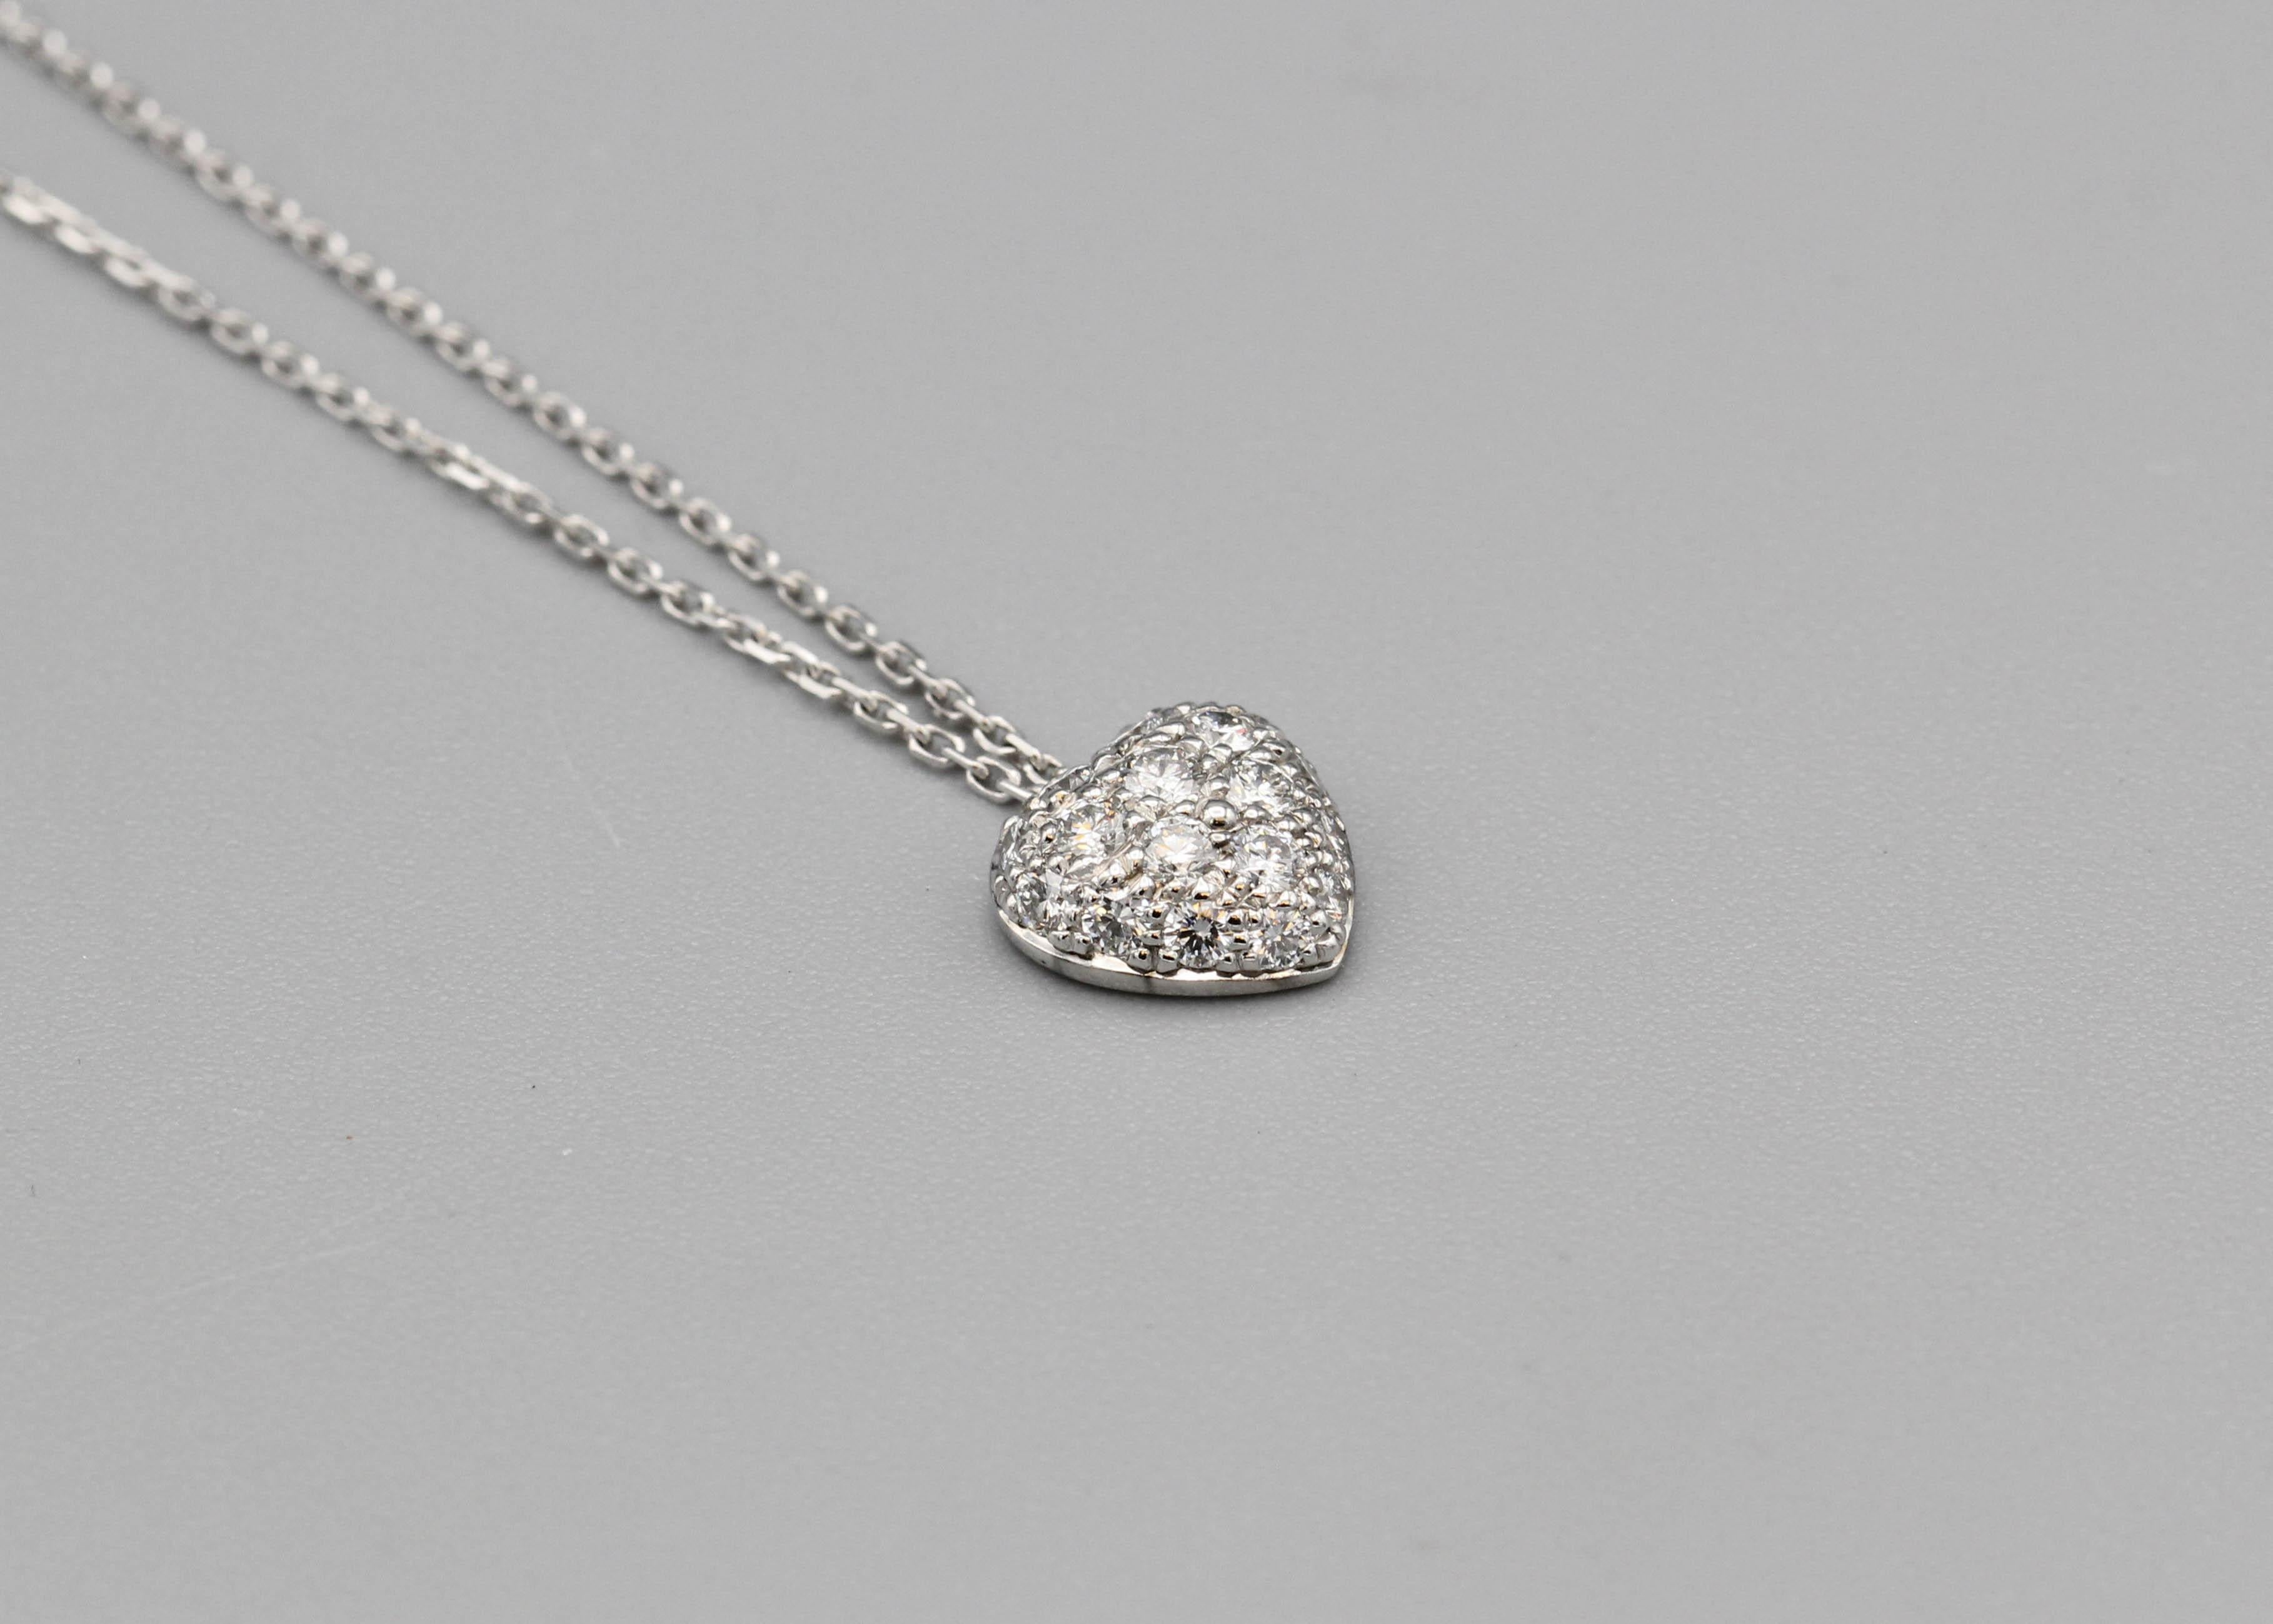 Dévoilez le romantique qui sommeille en vous avec le collier-pendentif en forme de cœur en or blanc 18k avec diamants de Cartier, un symbole d'amour et d'élégance qui capture l'essence du savoir-faire intemporel de Cartier. Ce collier pendentif